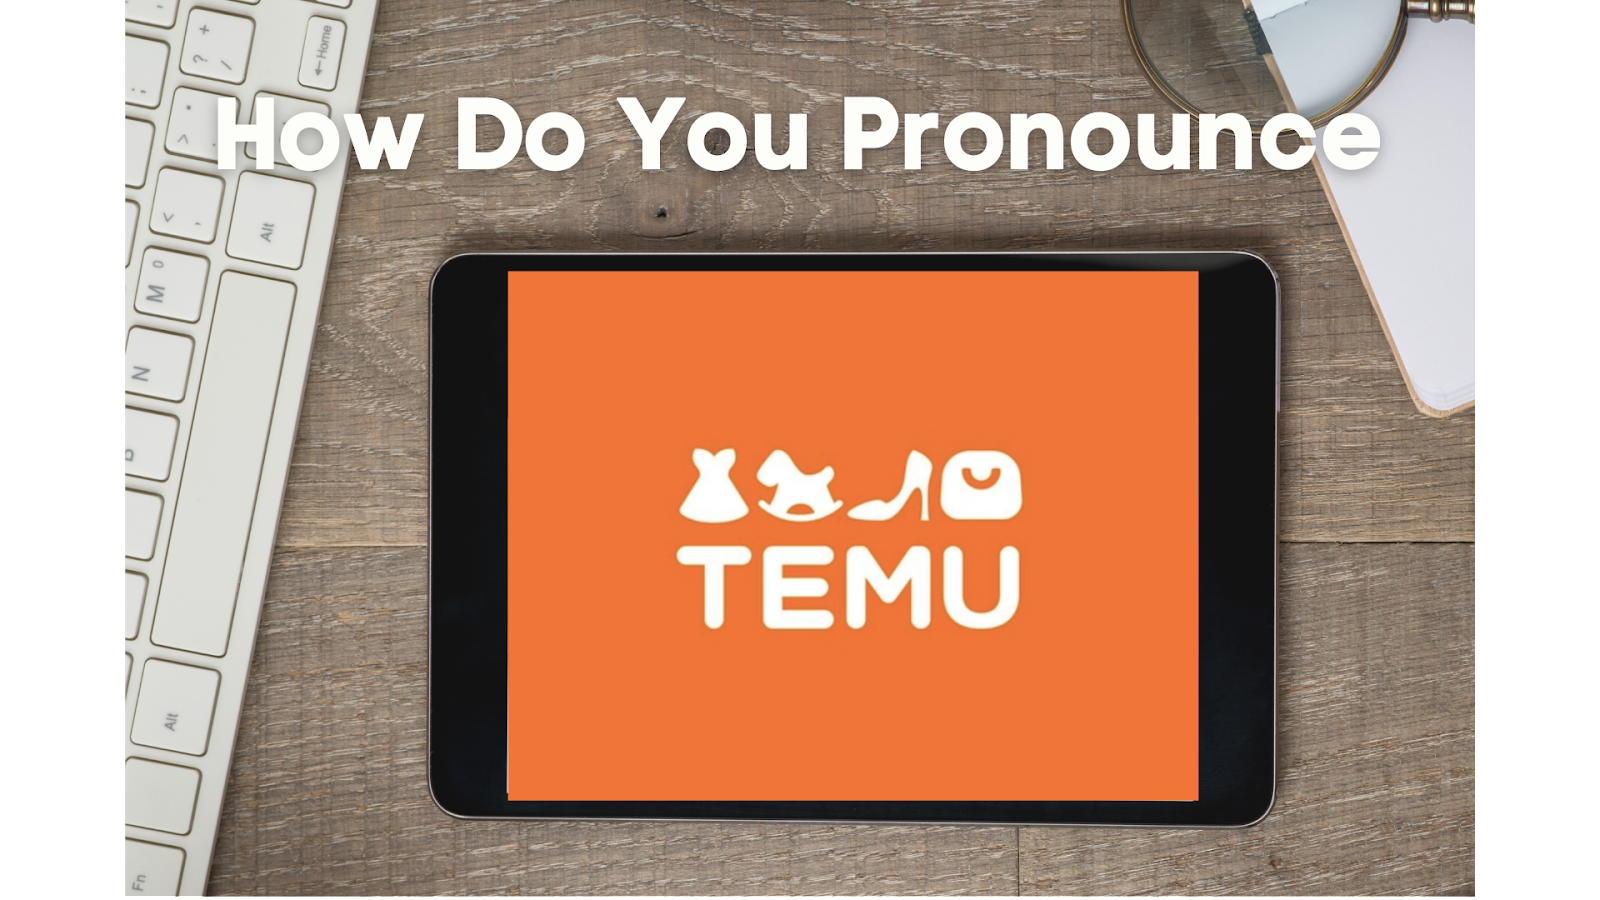 How to Pronounce Temu?